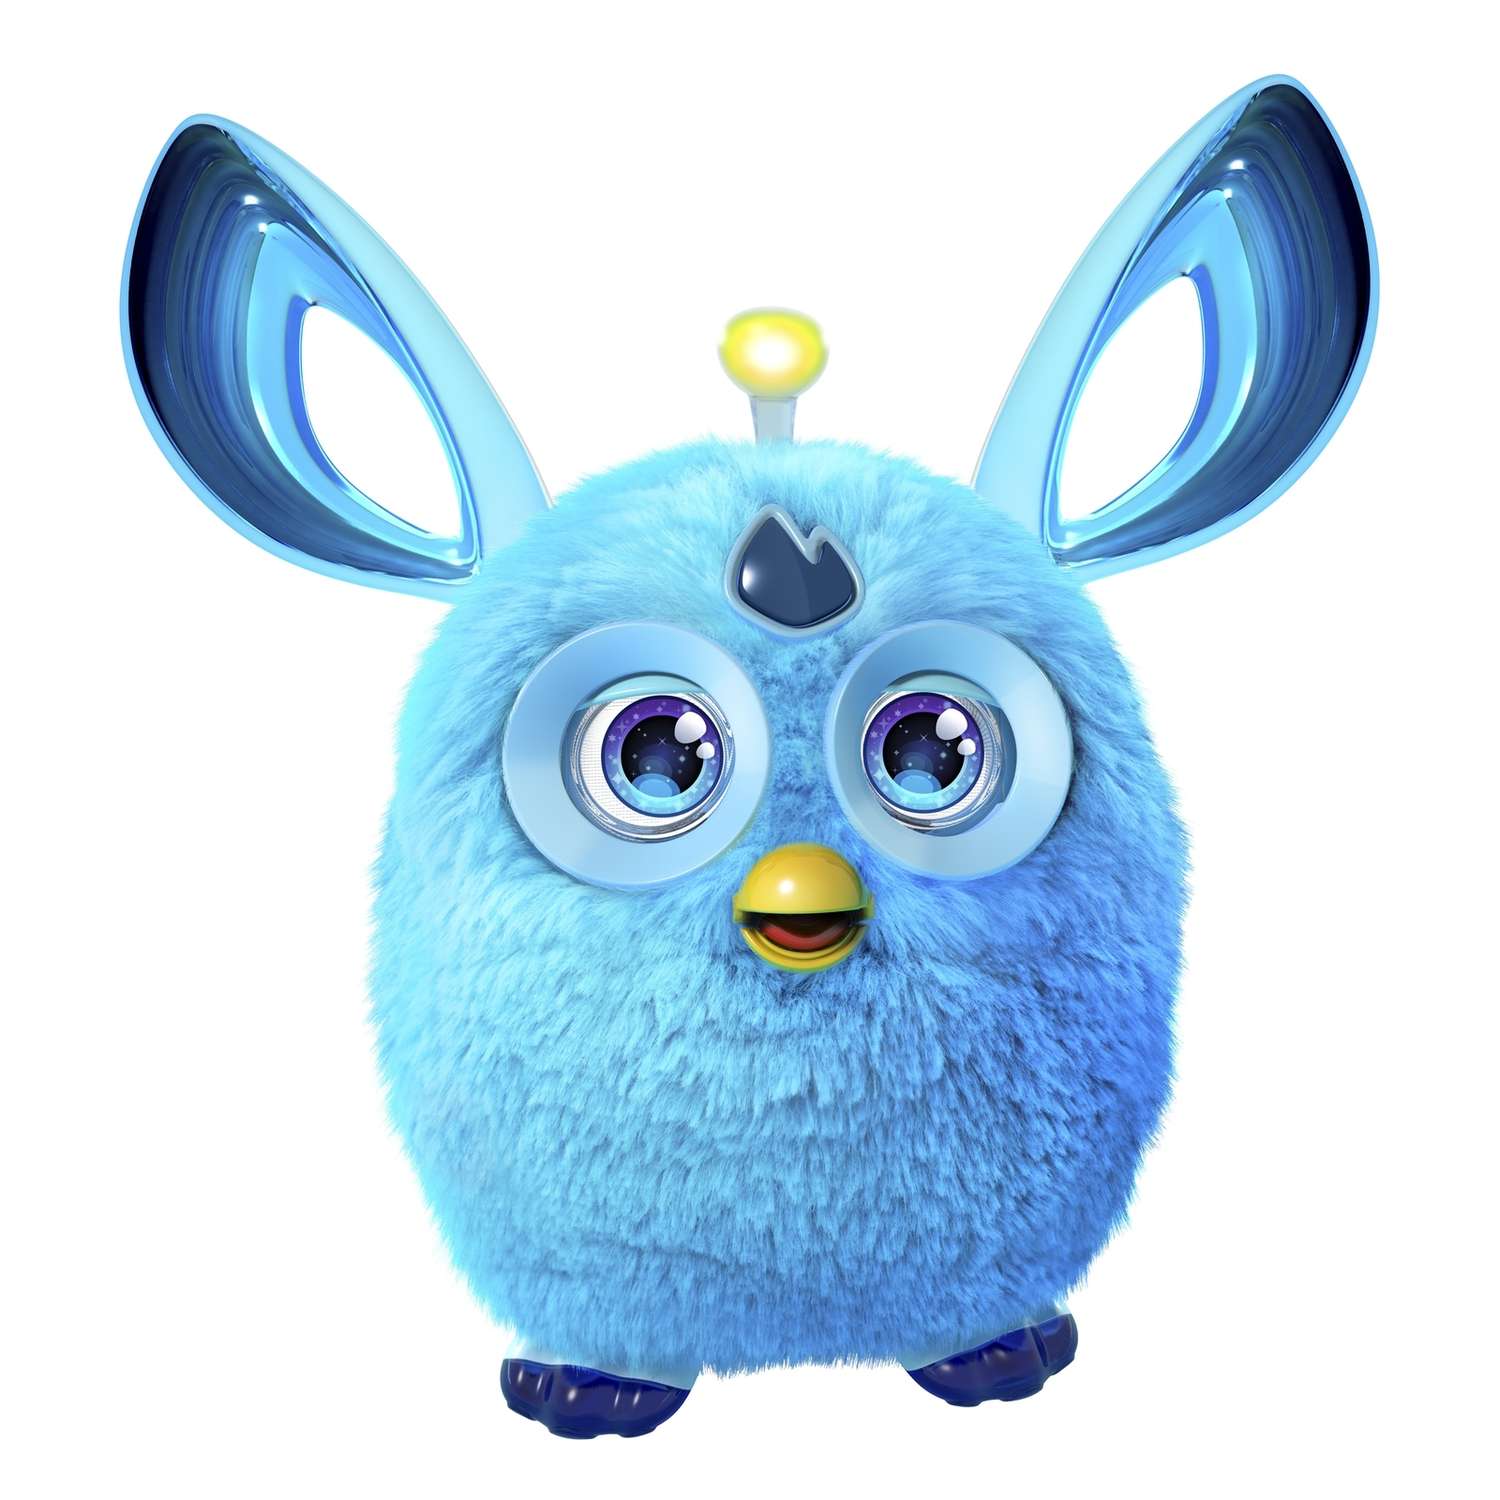 Рюкзак Furby Boom - Голубая волна, 35 см купить за рублей - Podarki-Market